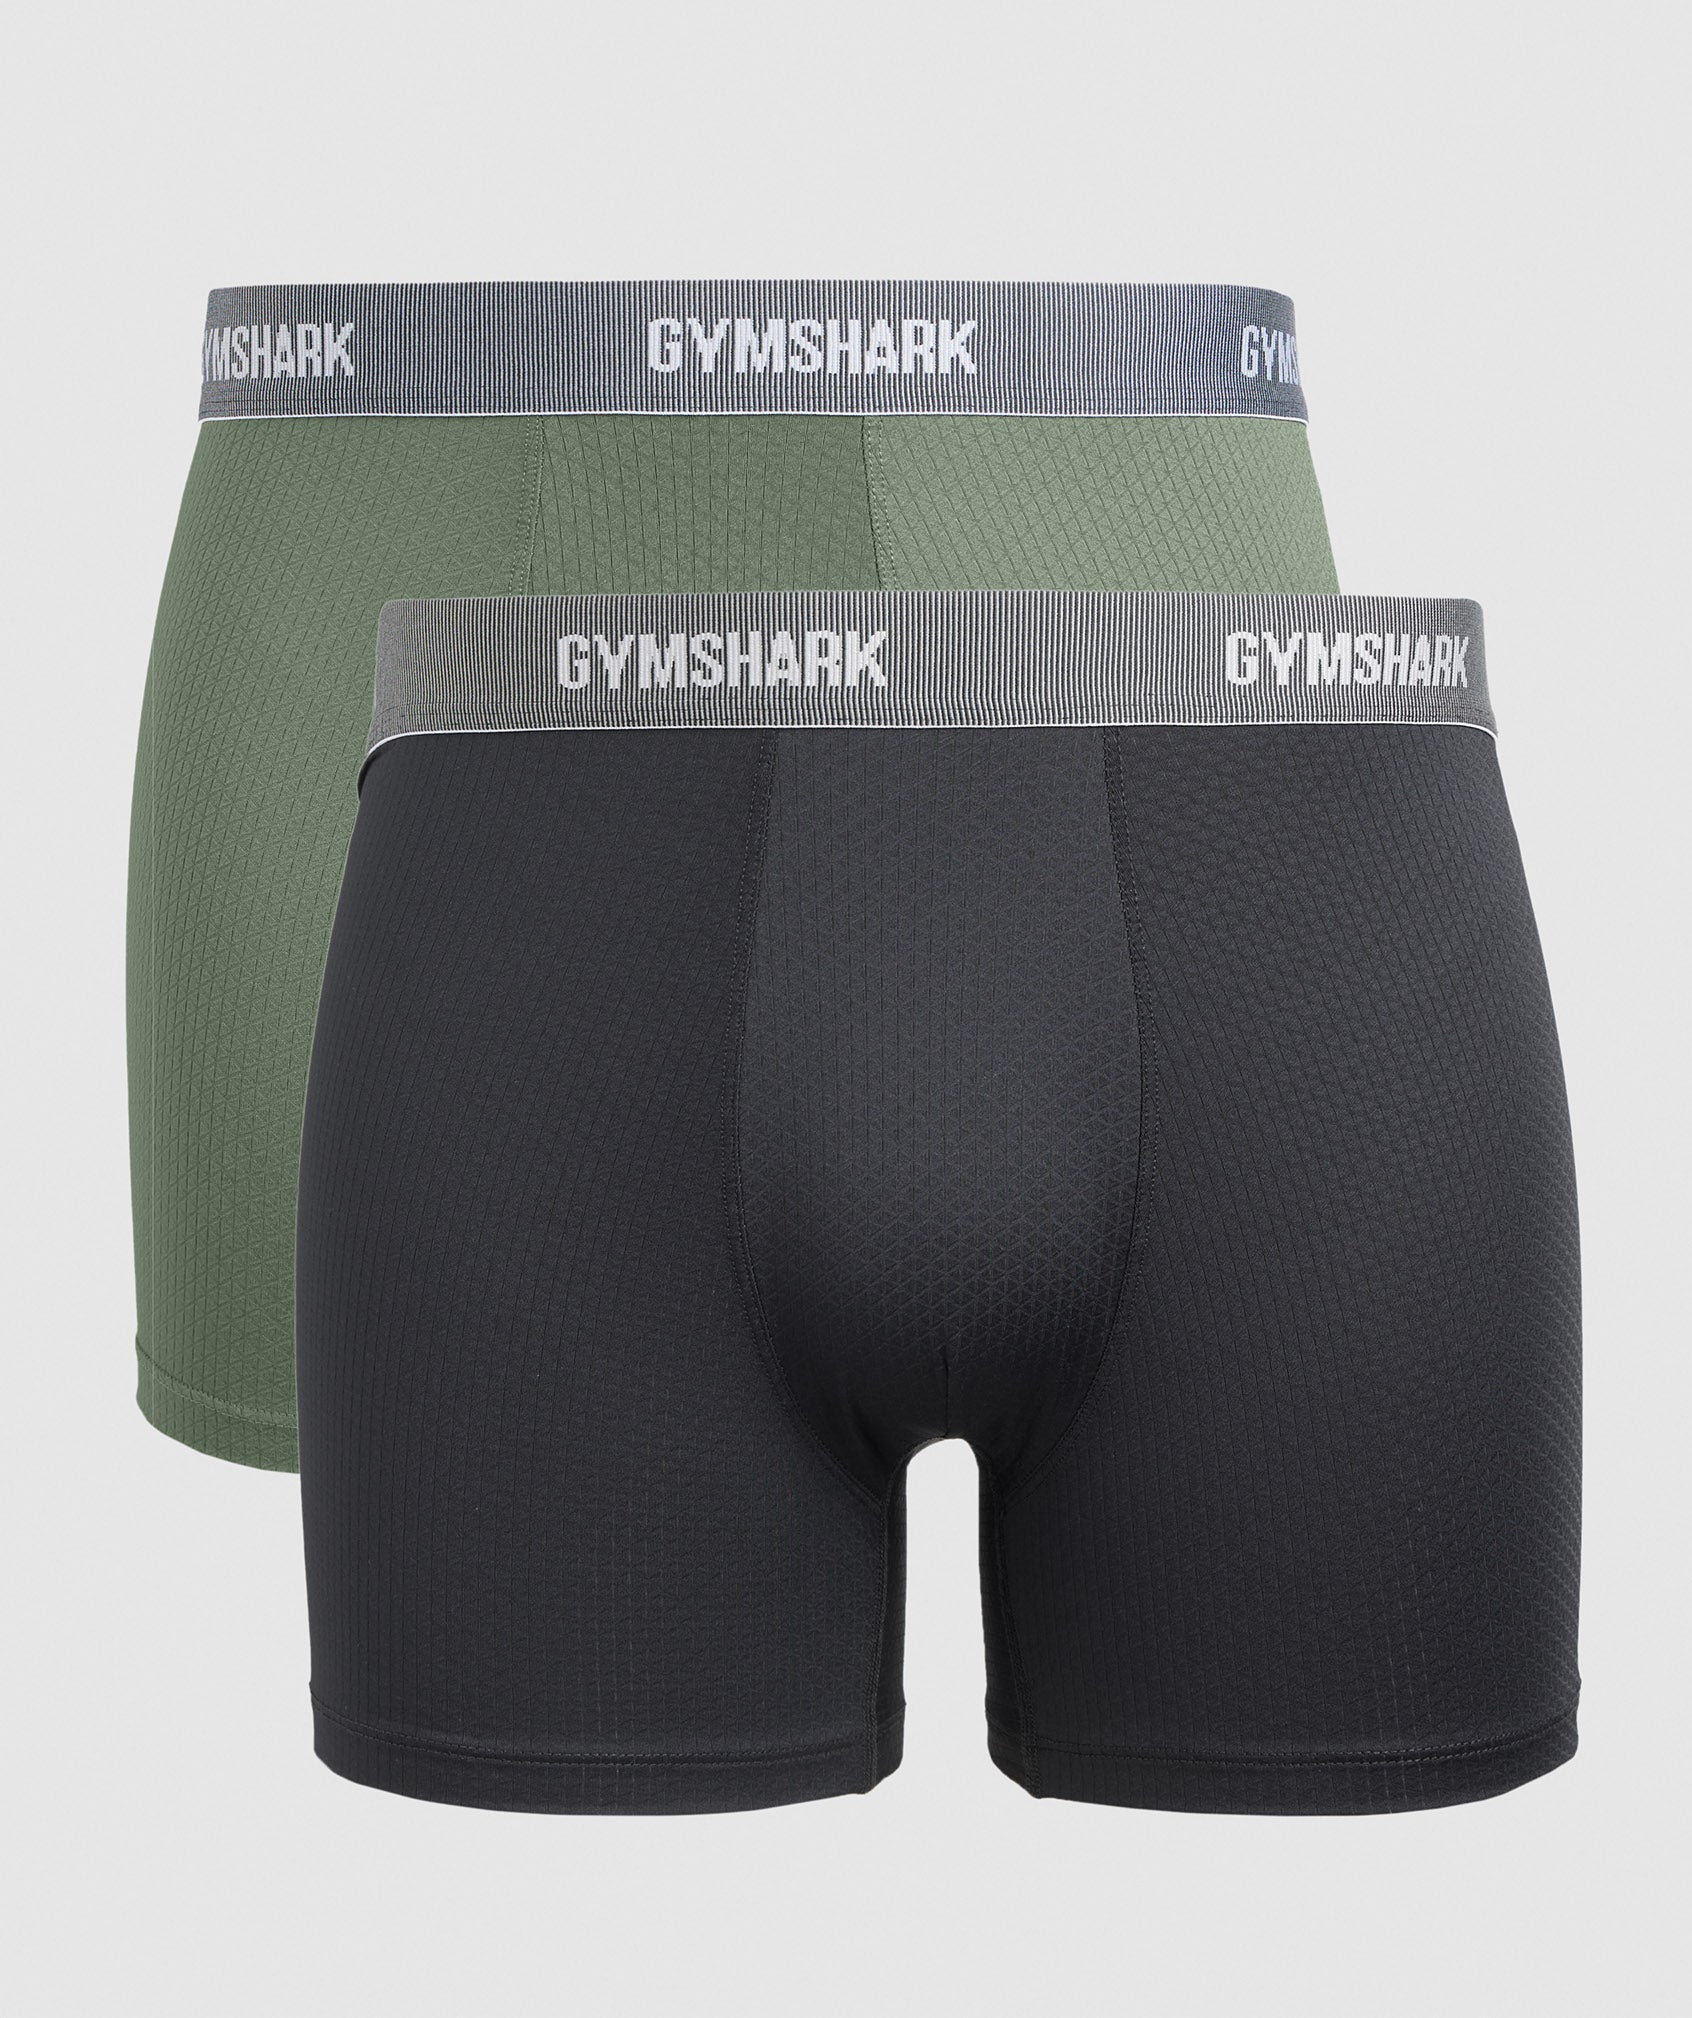 Gymshark Boxers 2pk Black Gymshark, 43% OFF